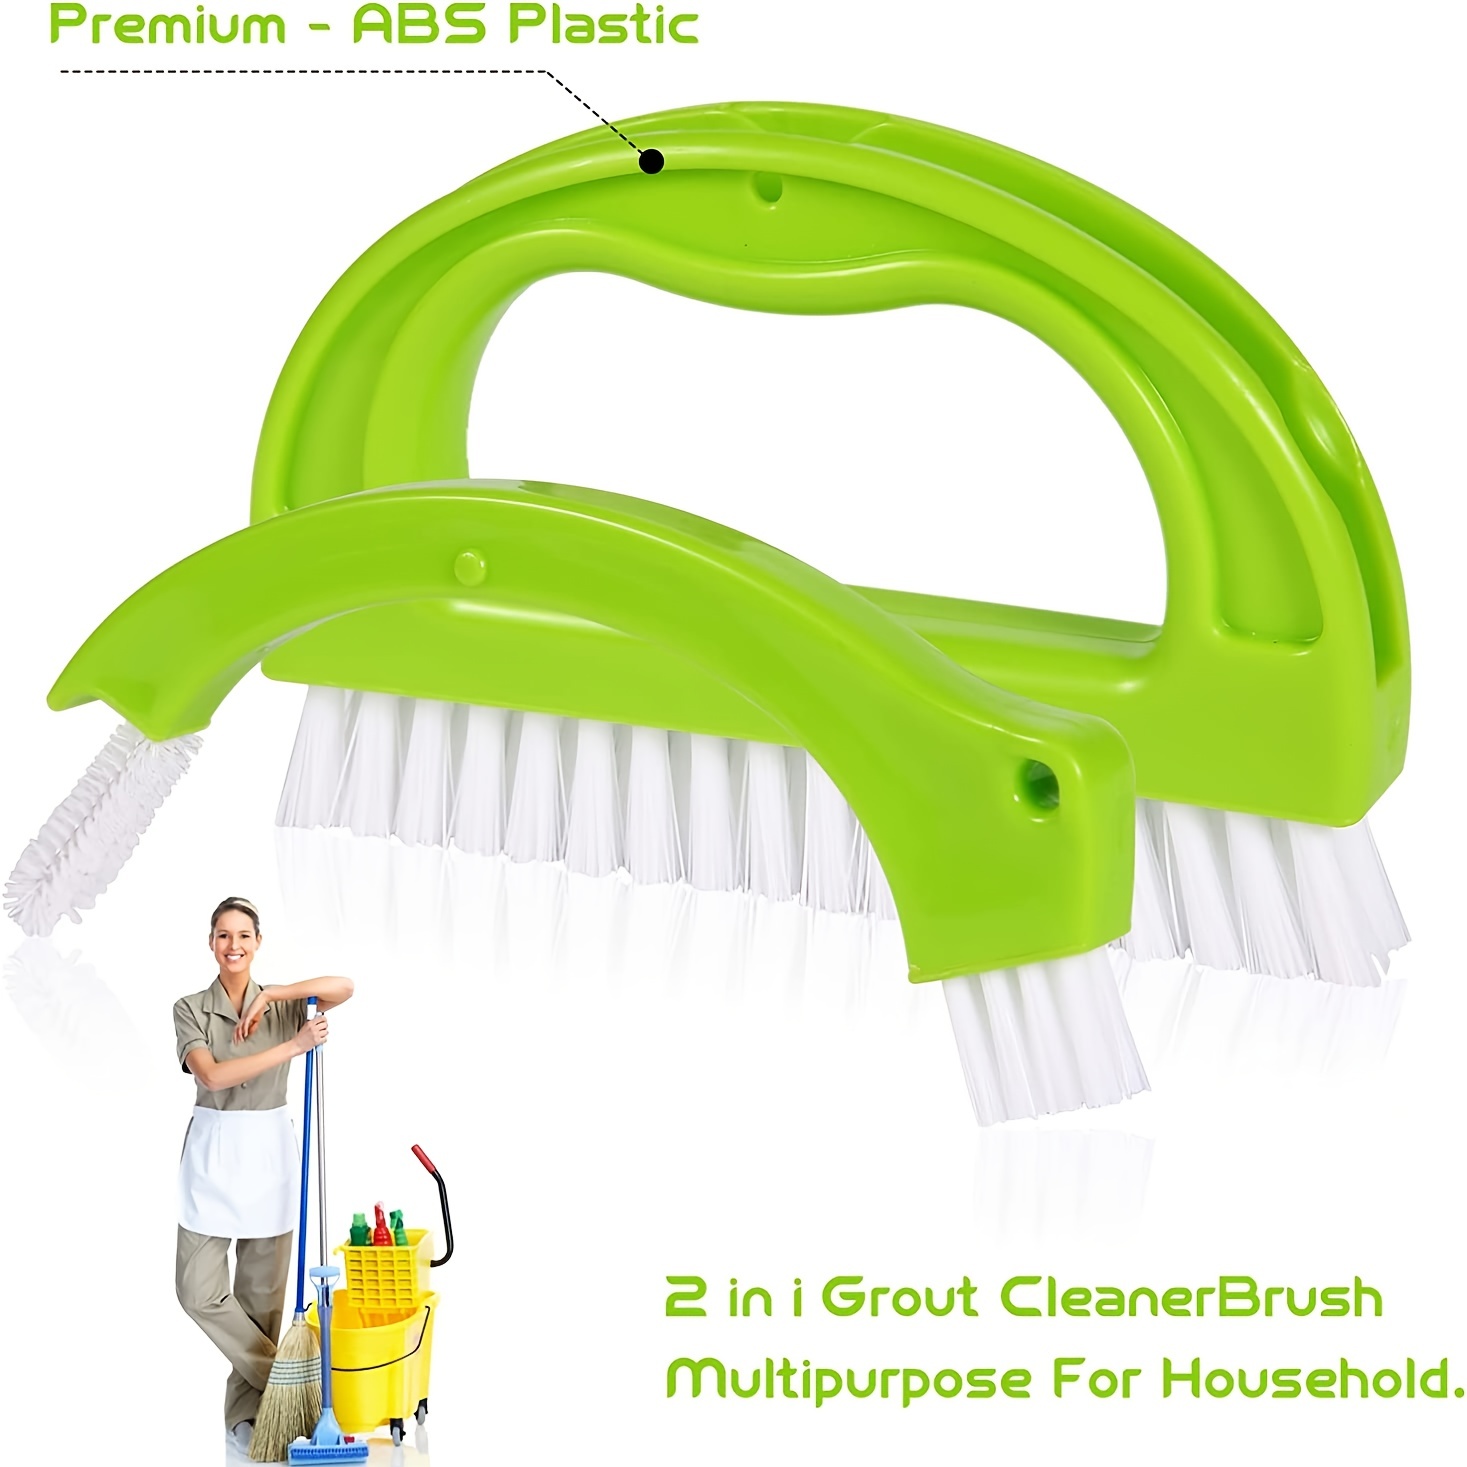 Cepillo limpiador de lechada - Cepillo para limpieza de juntas de azulejos  con cerdas de nylon - Gran uso para limpieza profunda de duchas, pisos, ven